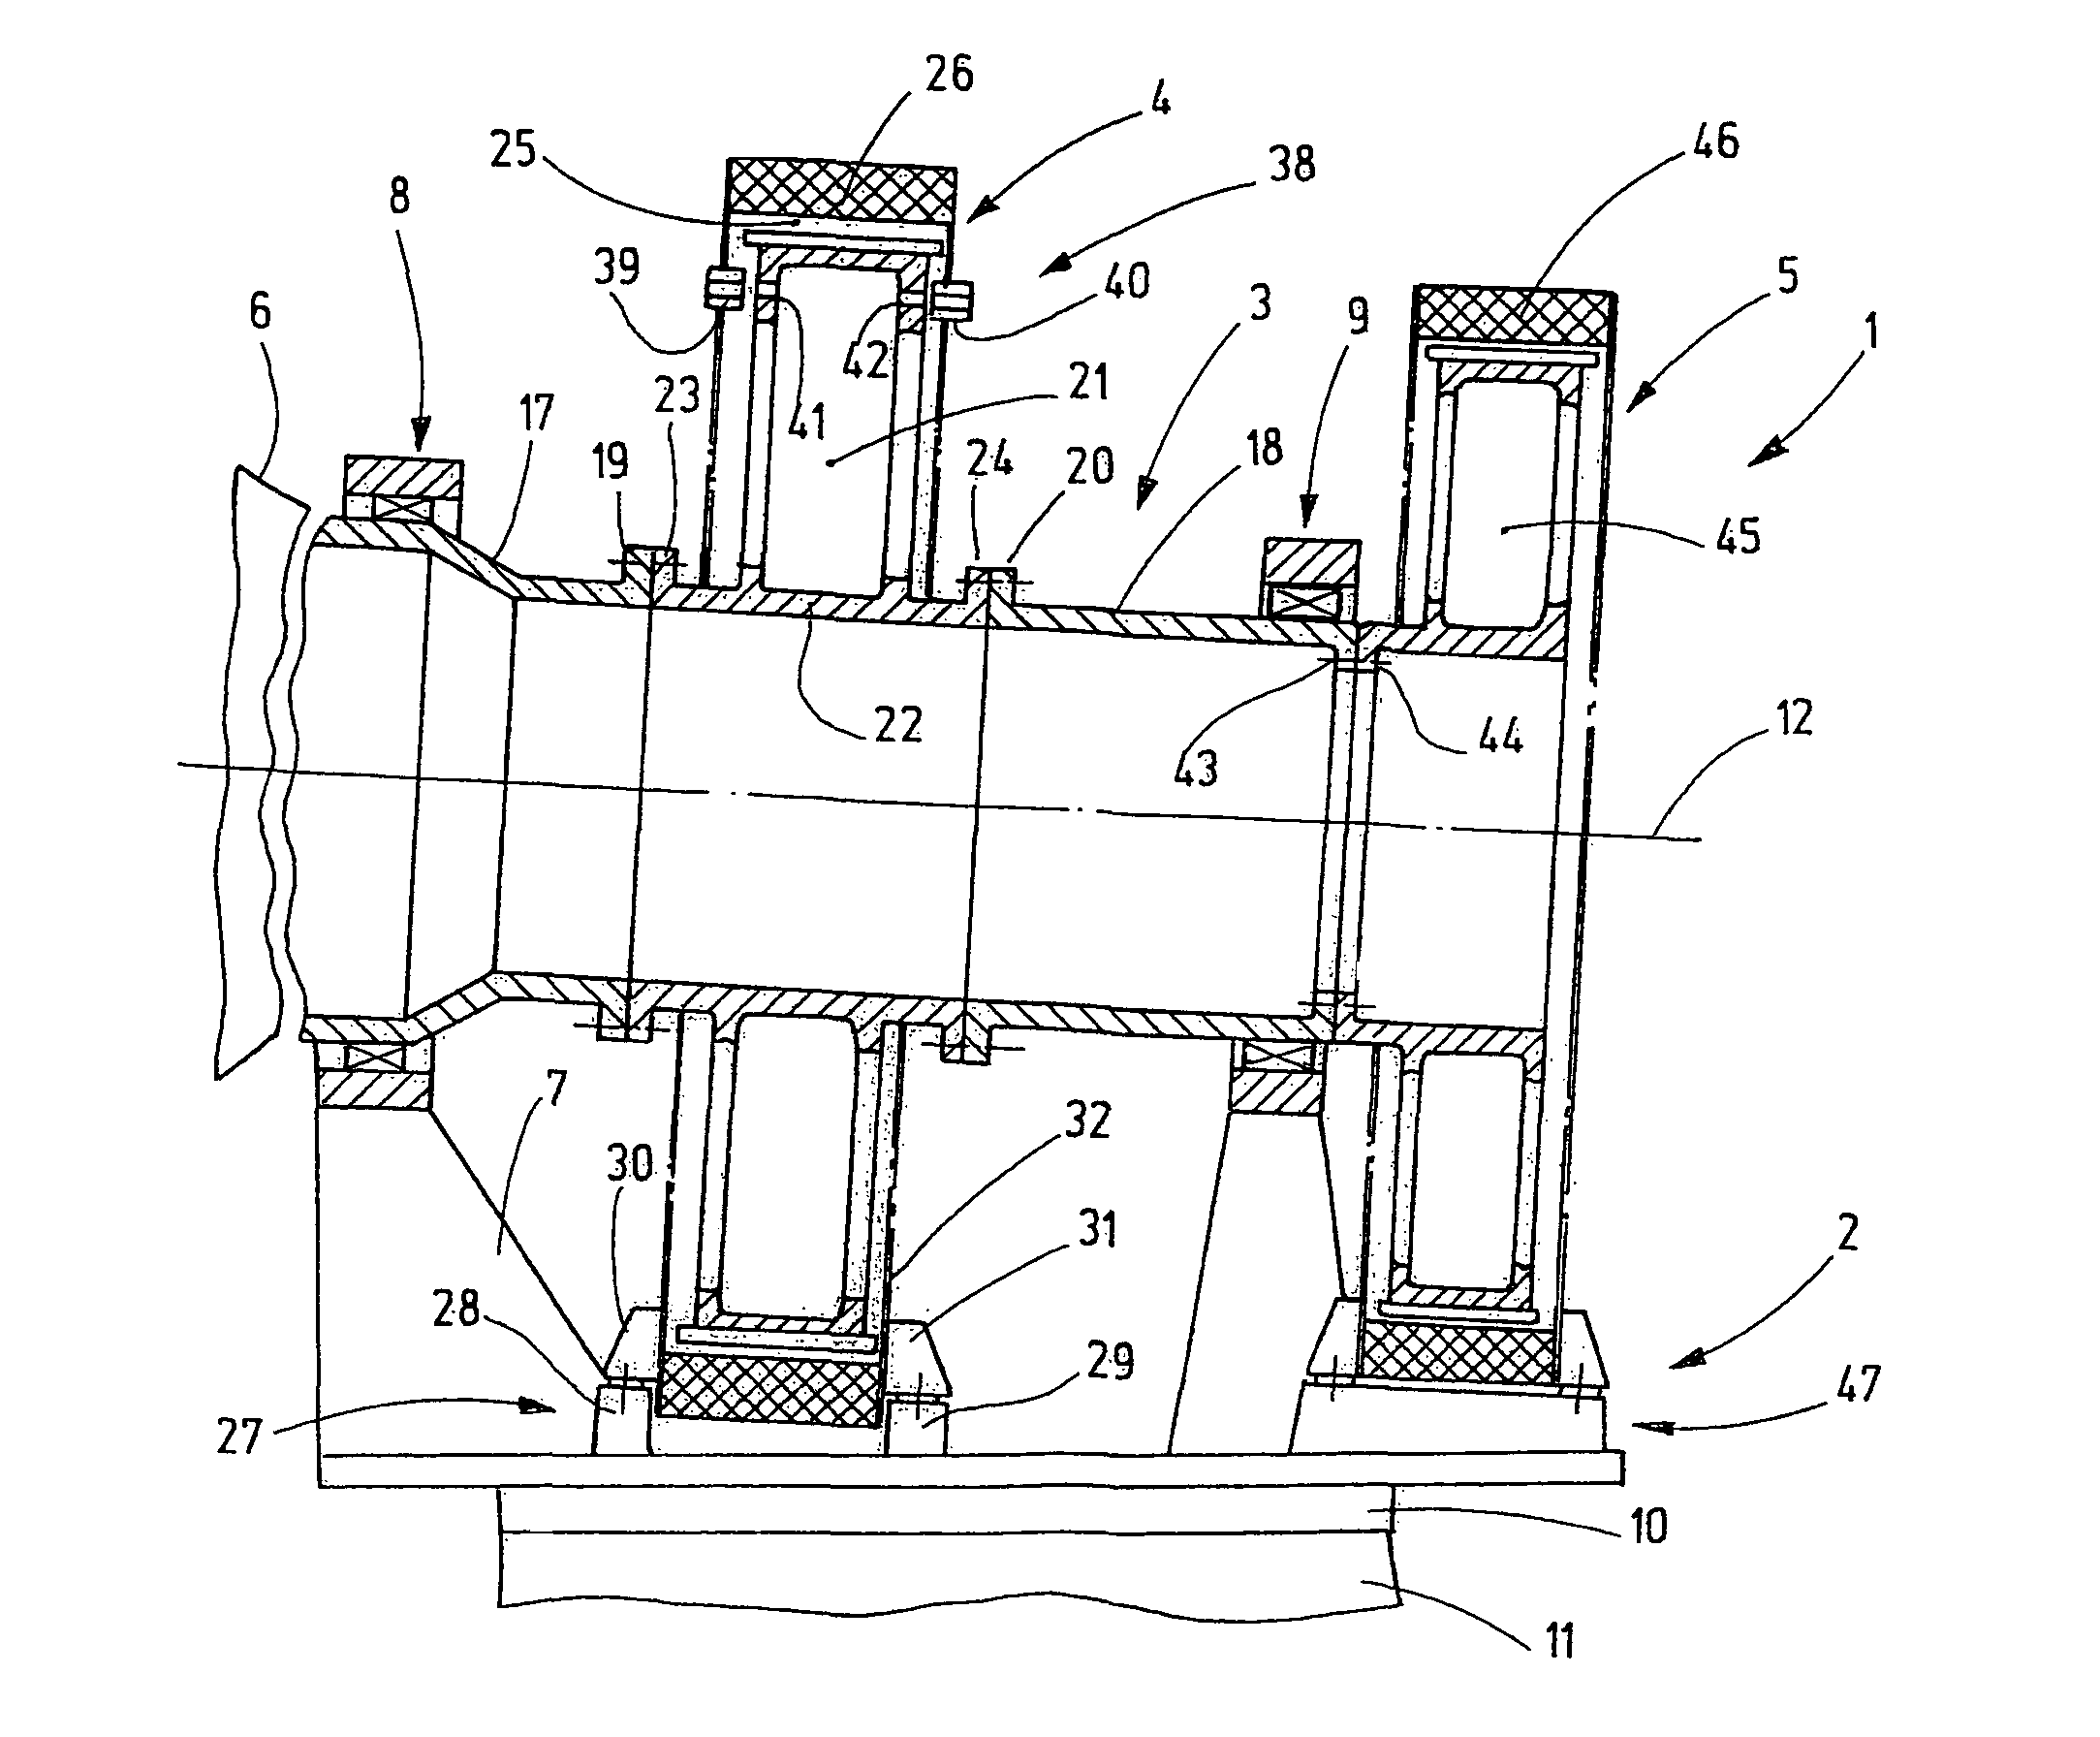 Gondola with multi-part main shaft